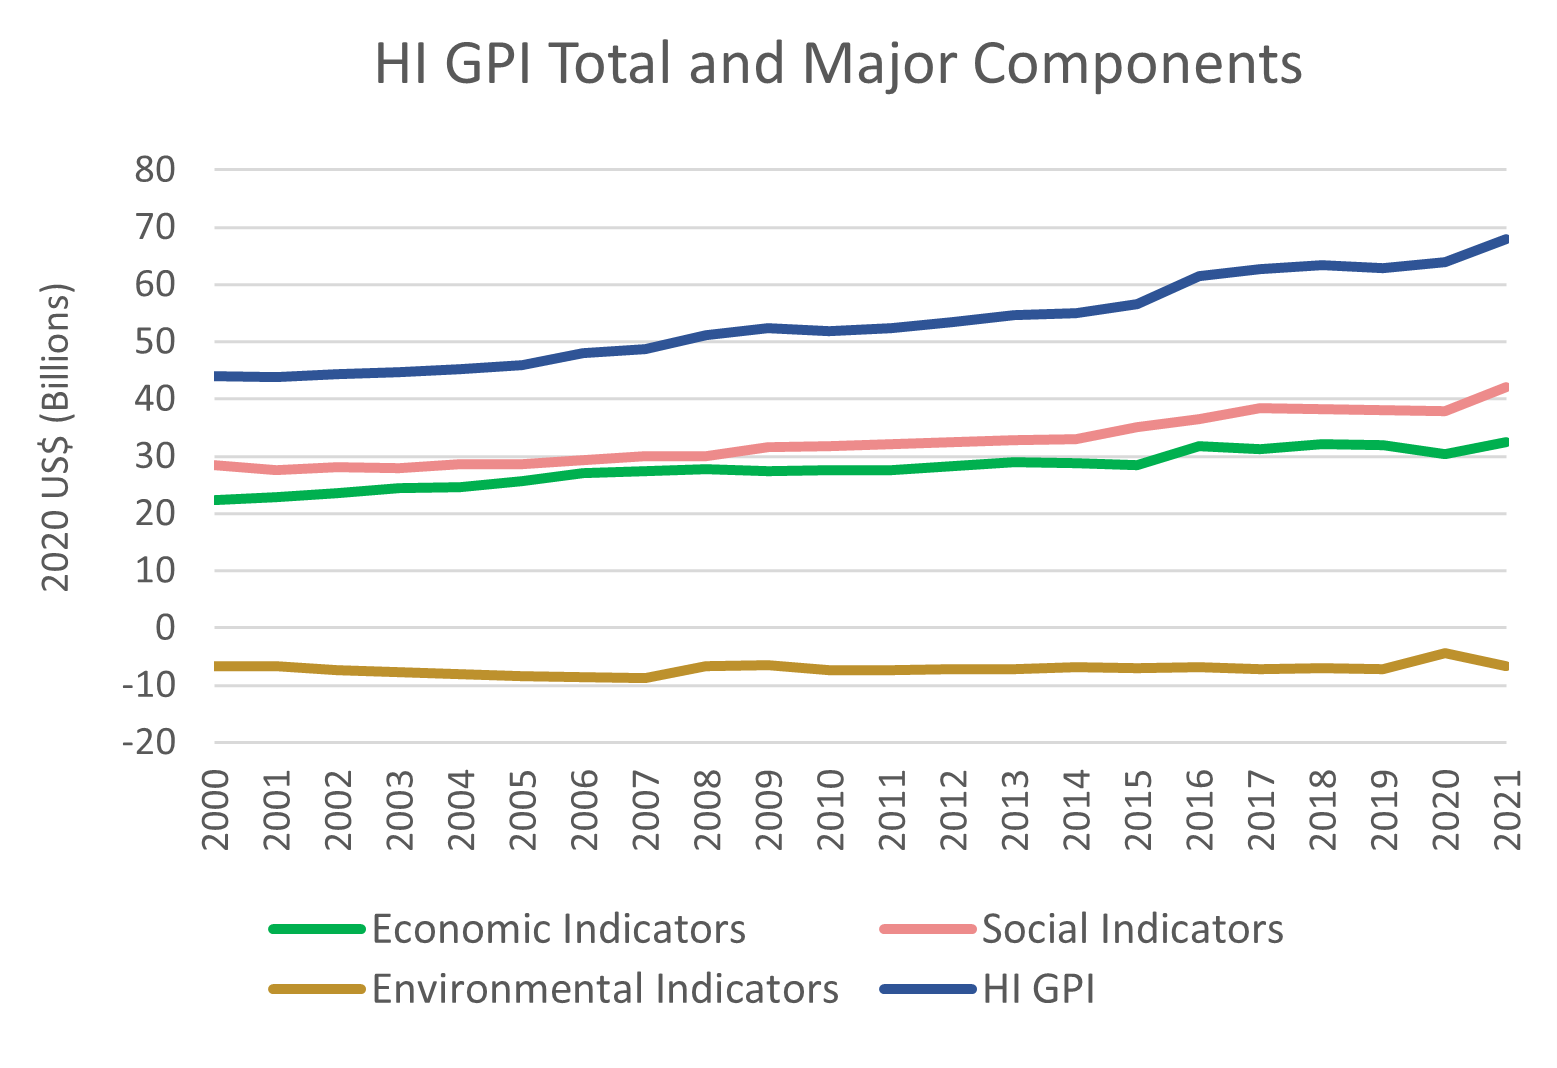 HI GPI and Major Components GRAPH